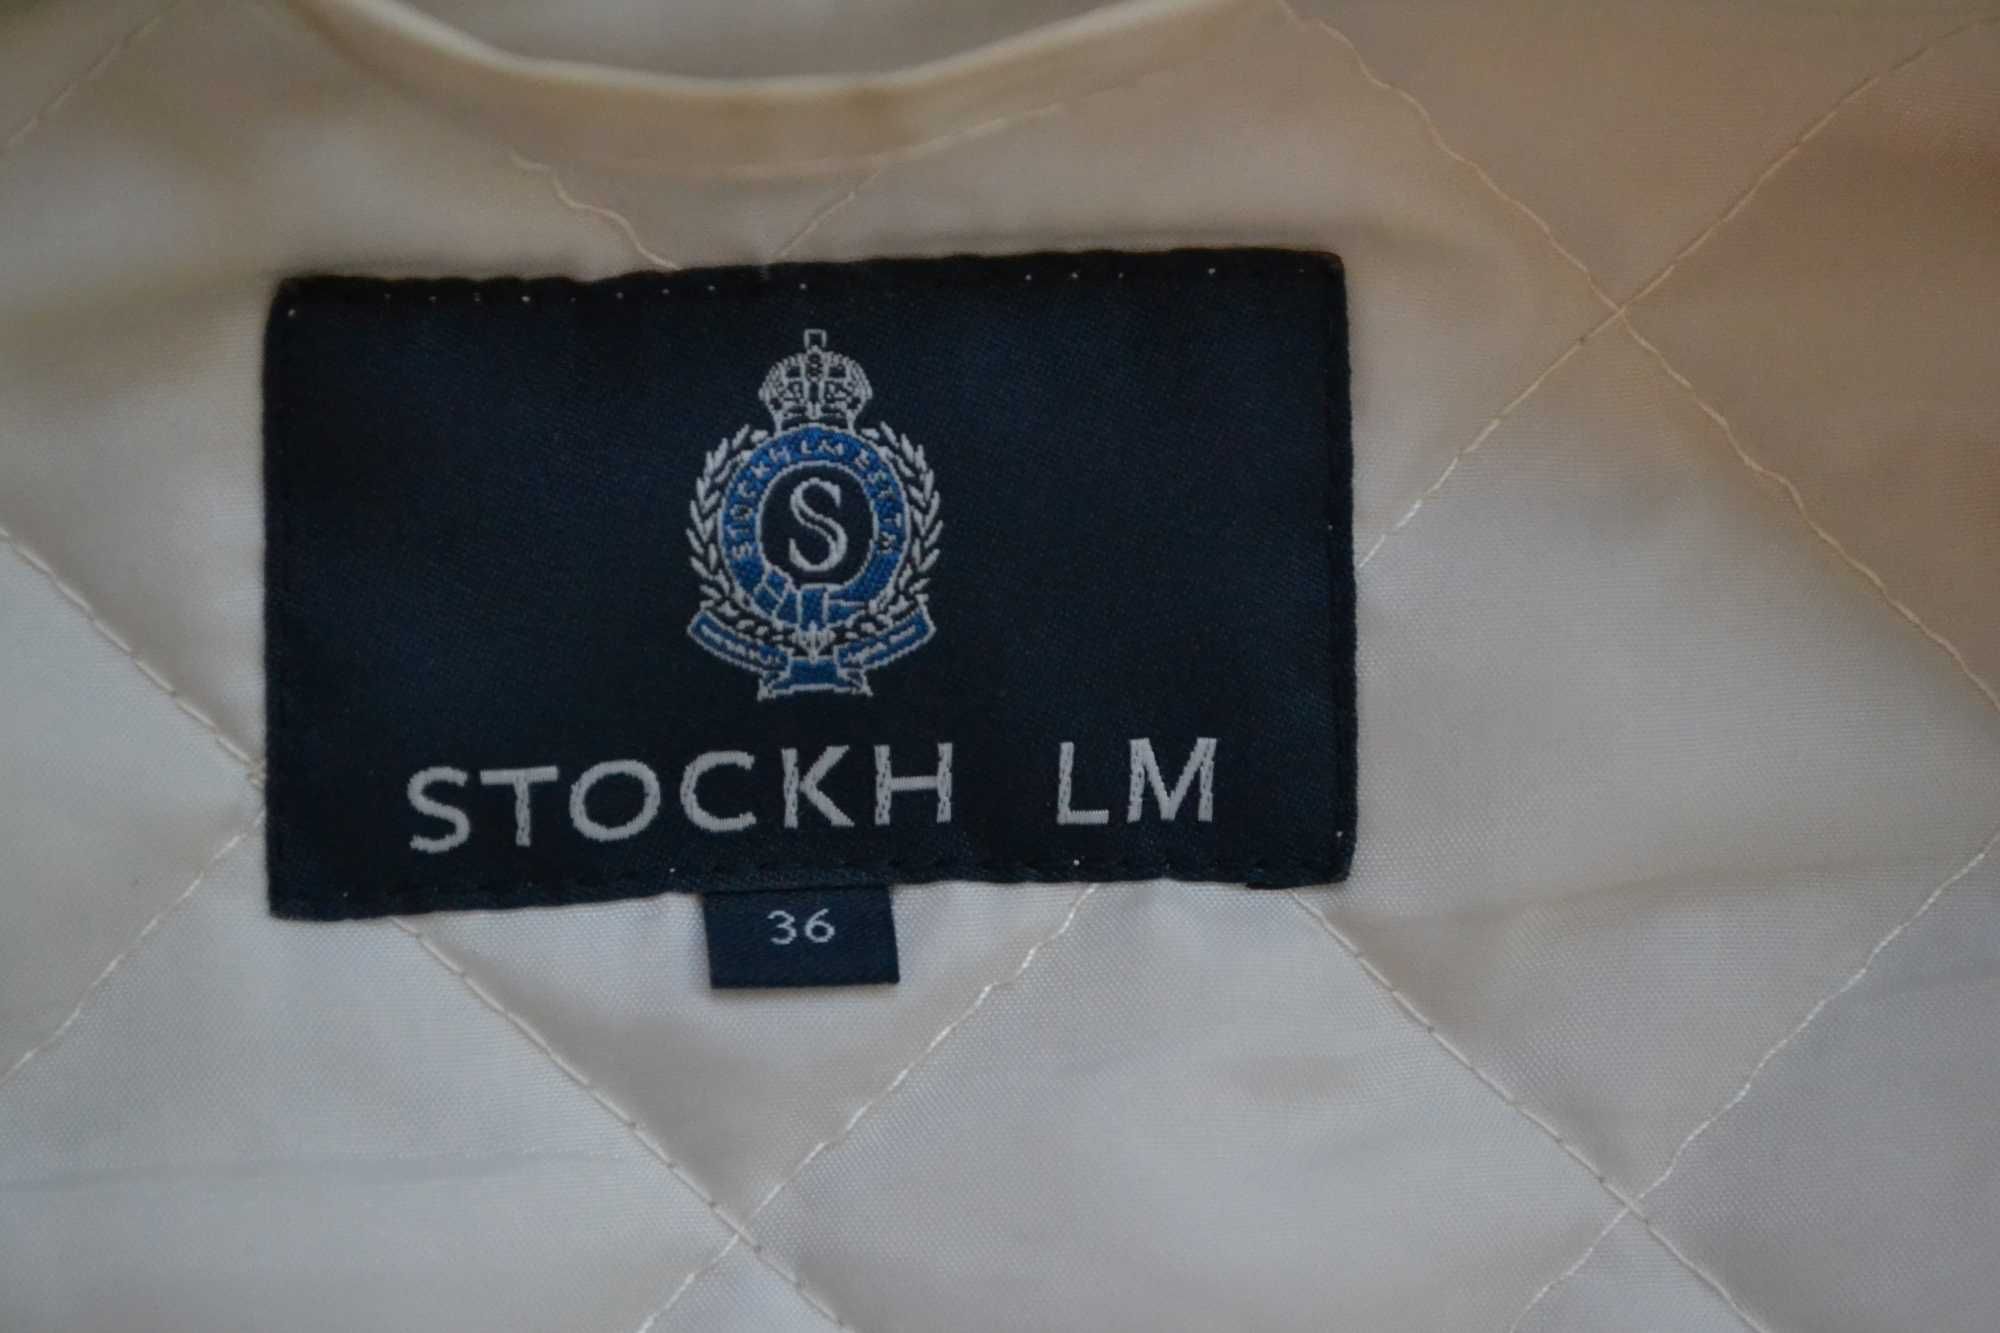 Prześliczna kurtka damska skandynawskiej marki Stockh LM/ rozm.36